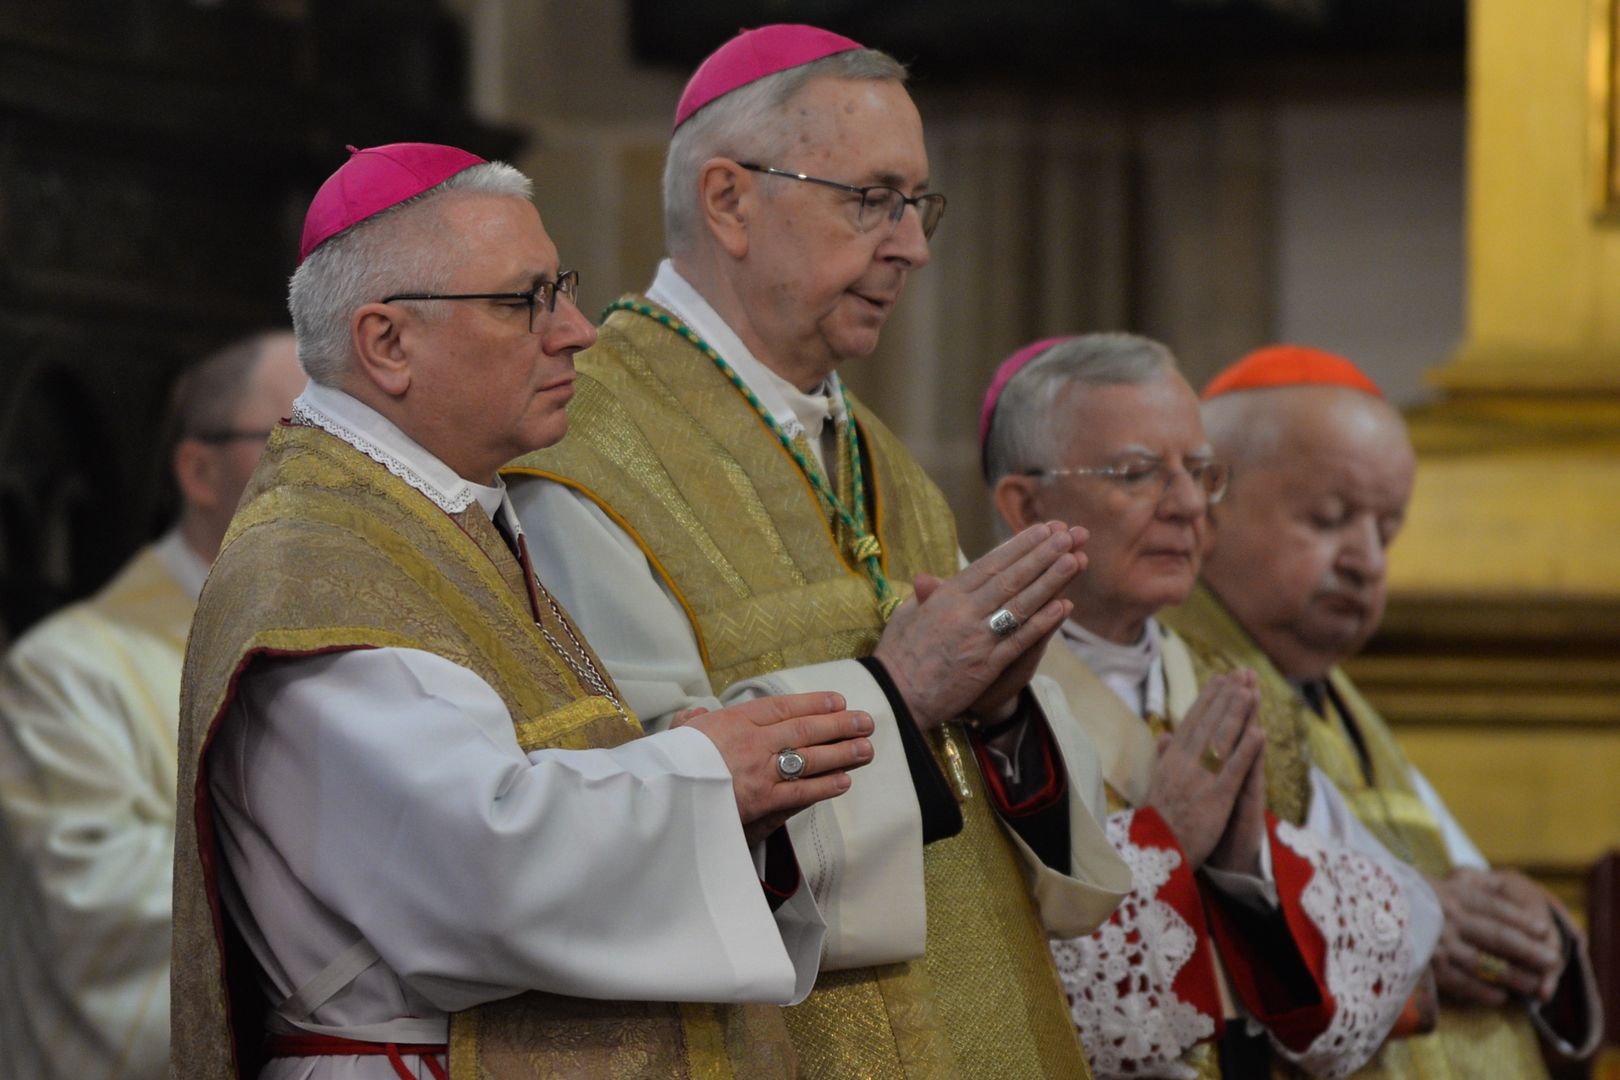 Polscy biskupi wezwani do Watykanu. Gądecki zabrał głos na temat "plotek"